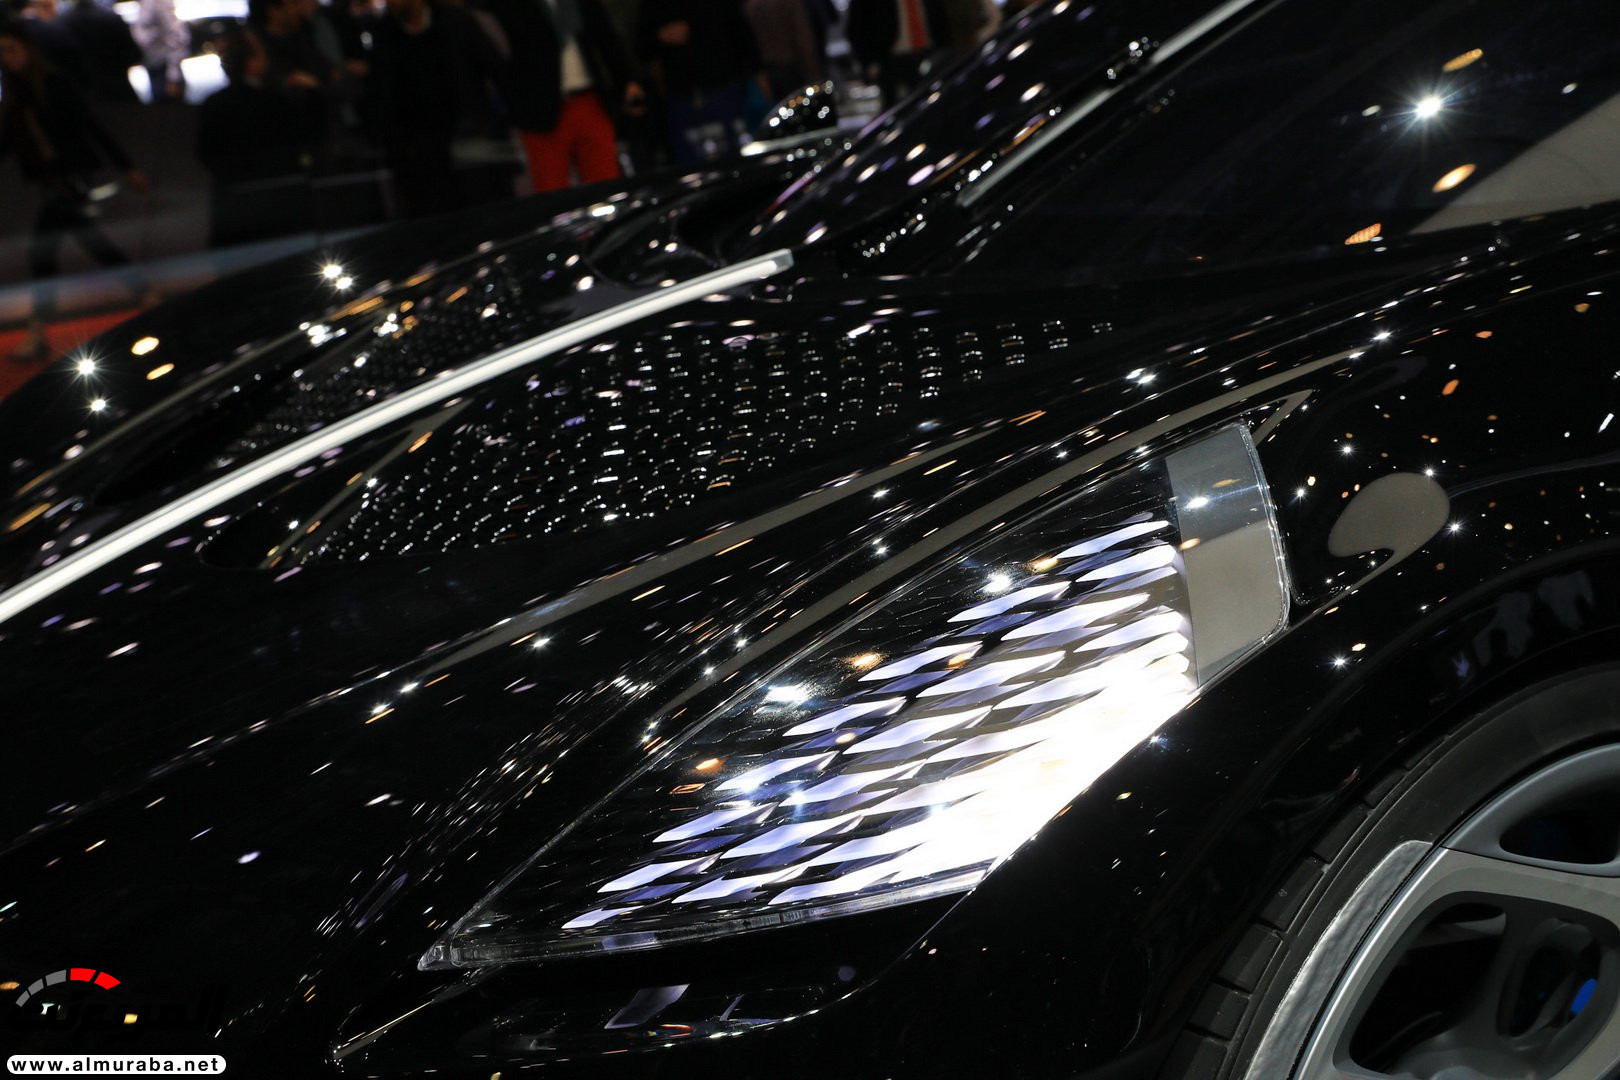 كريستيانو رونالدو قد يكون مالك بوجاتي لافواتيور نوار اغلى سيارة في العالم! 33